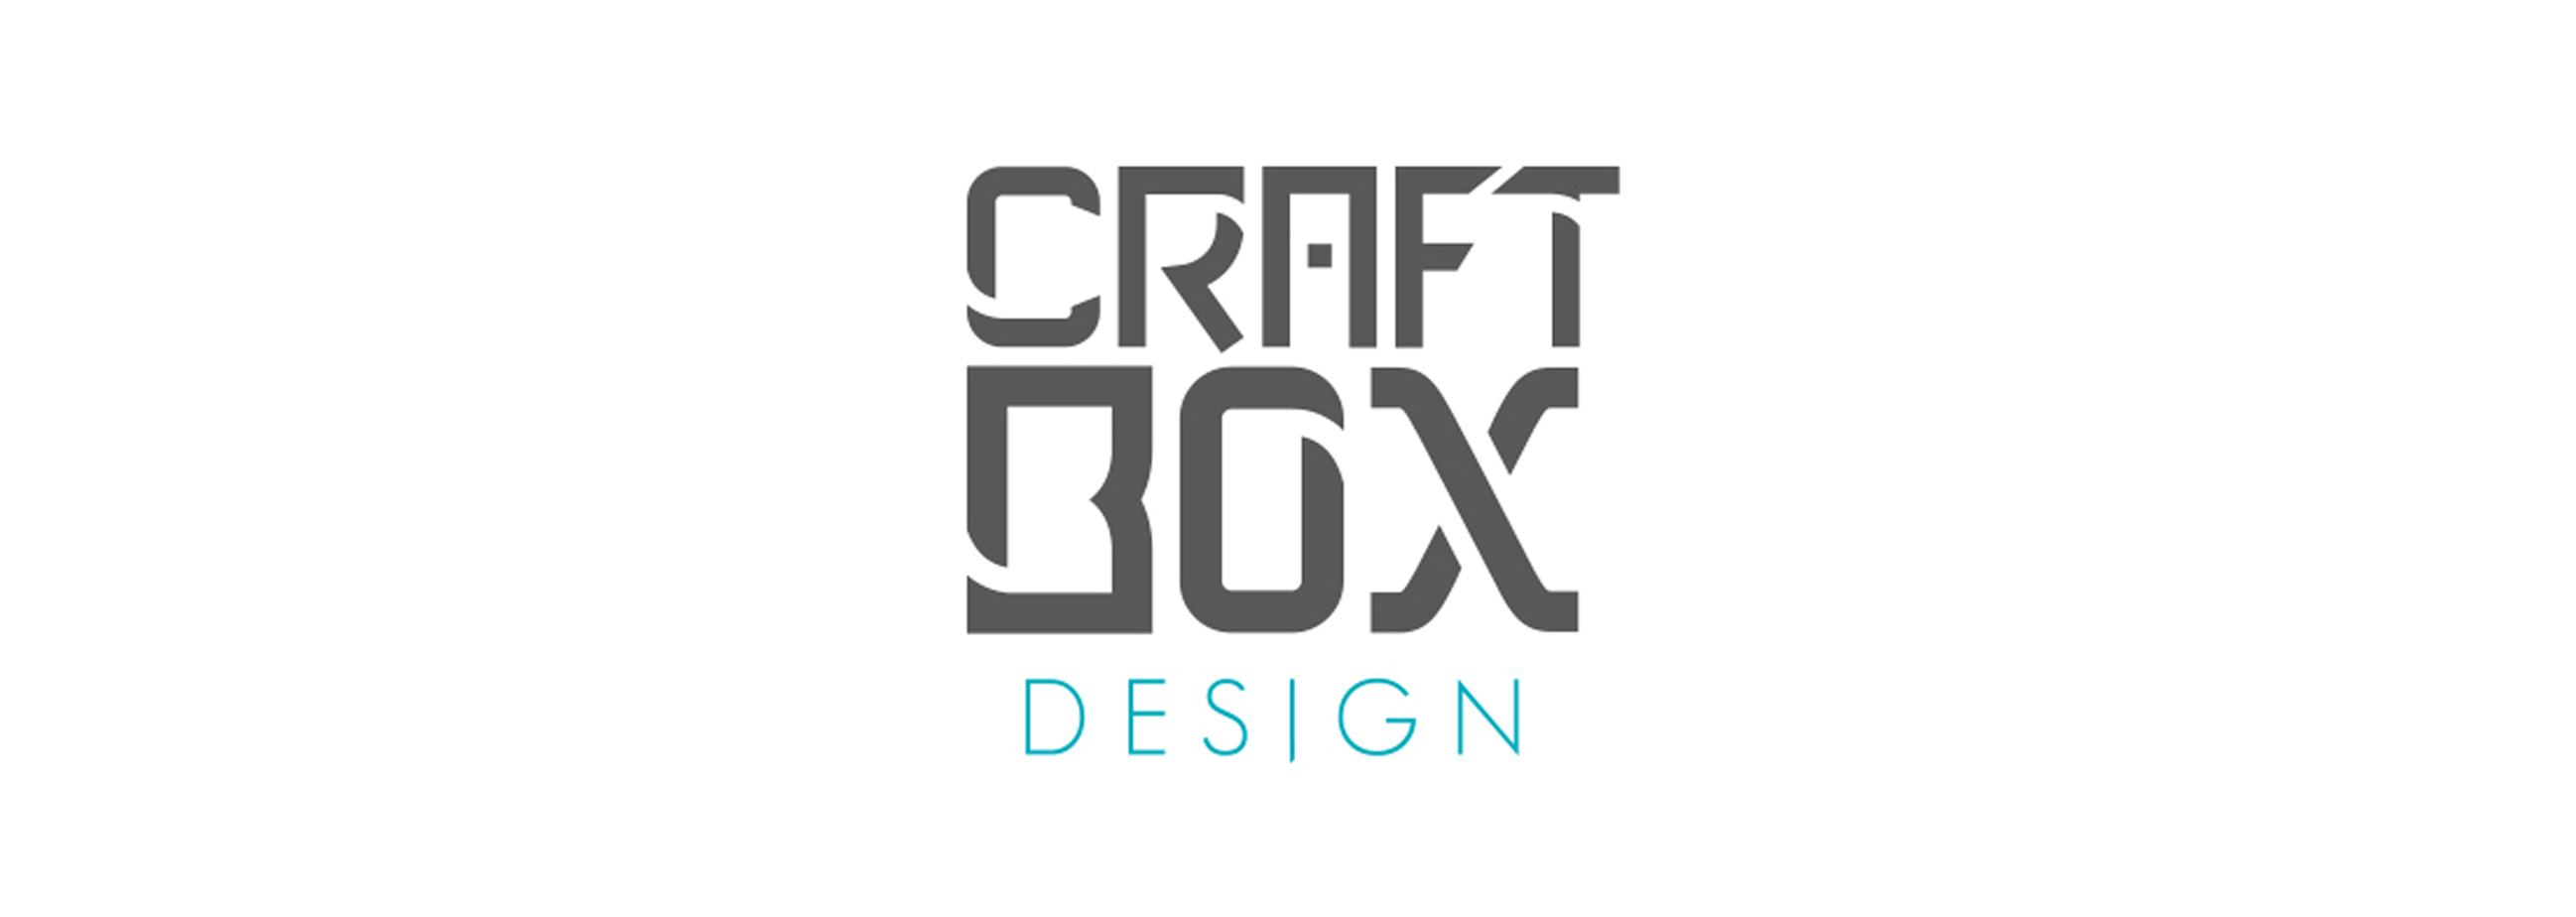 craftbox.jpg